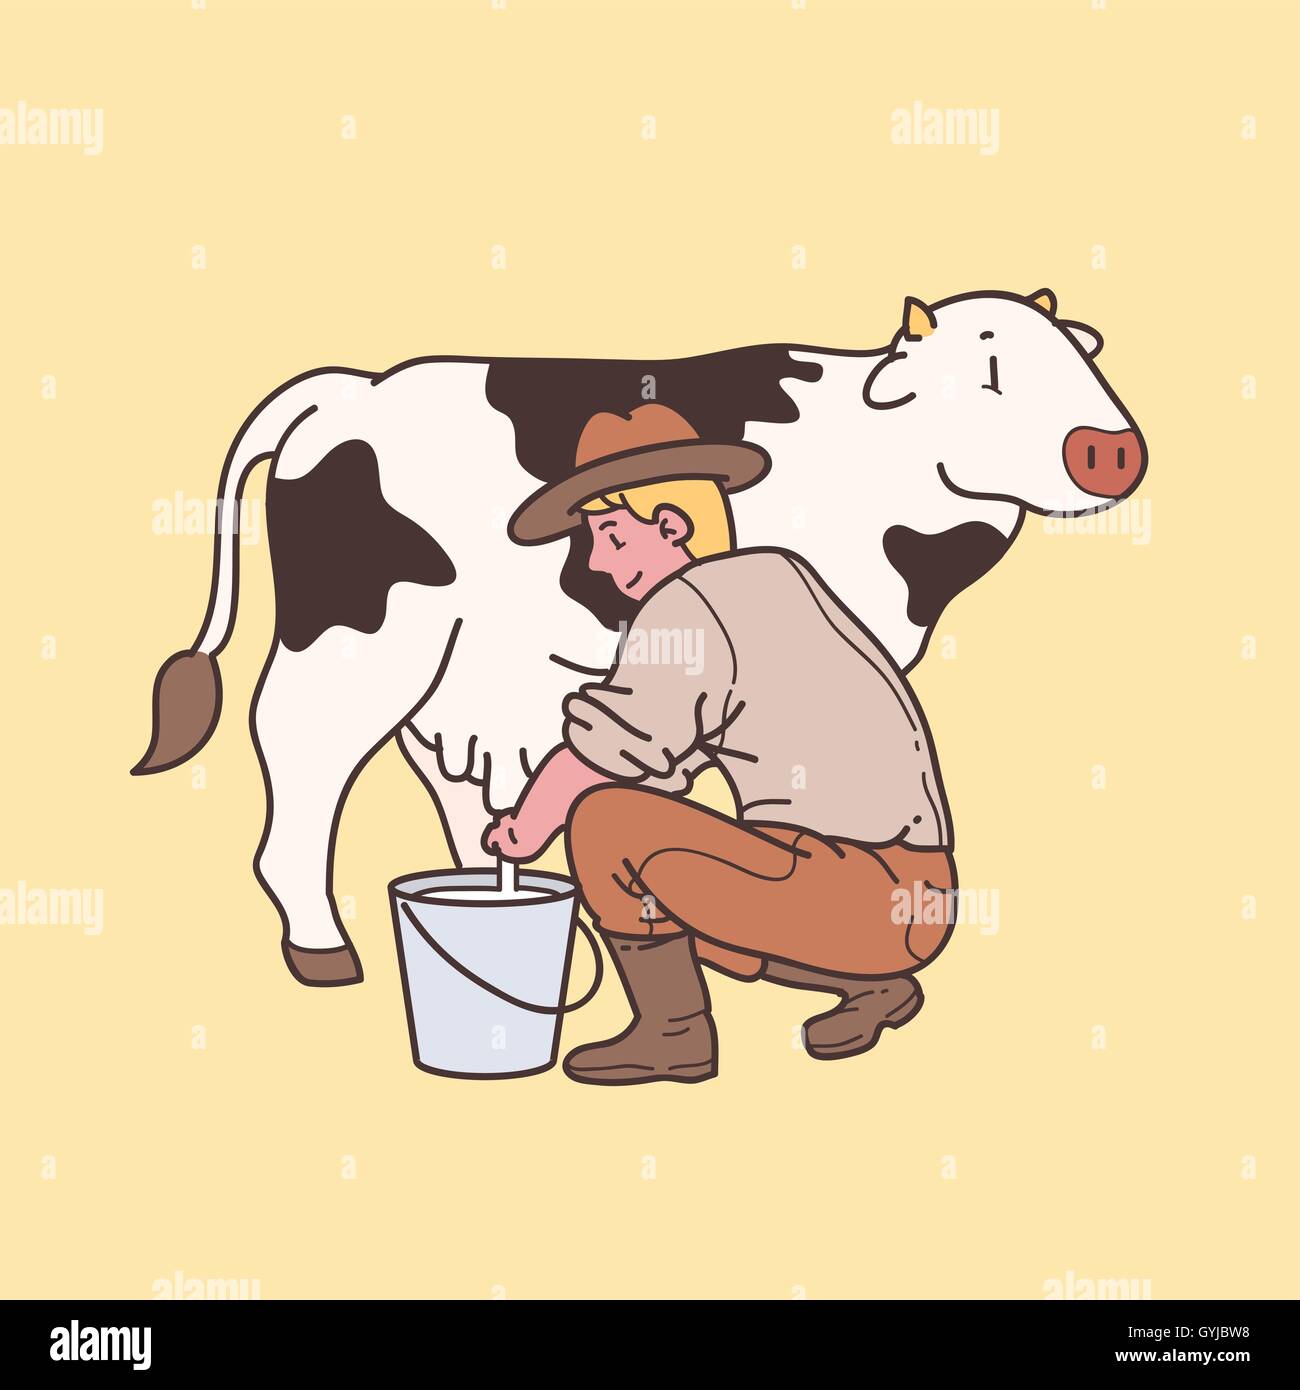 Man milking cow Stock Vector